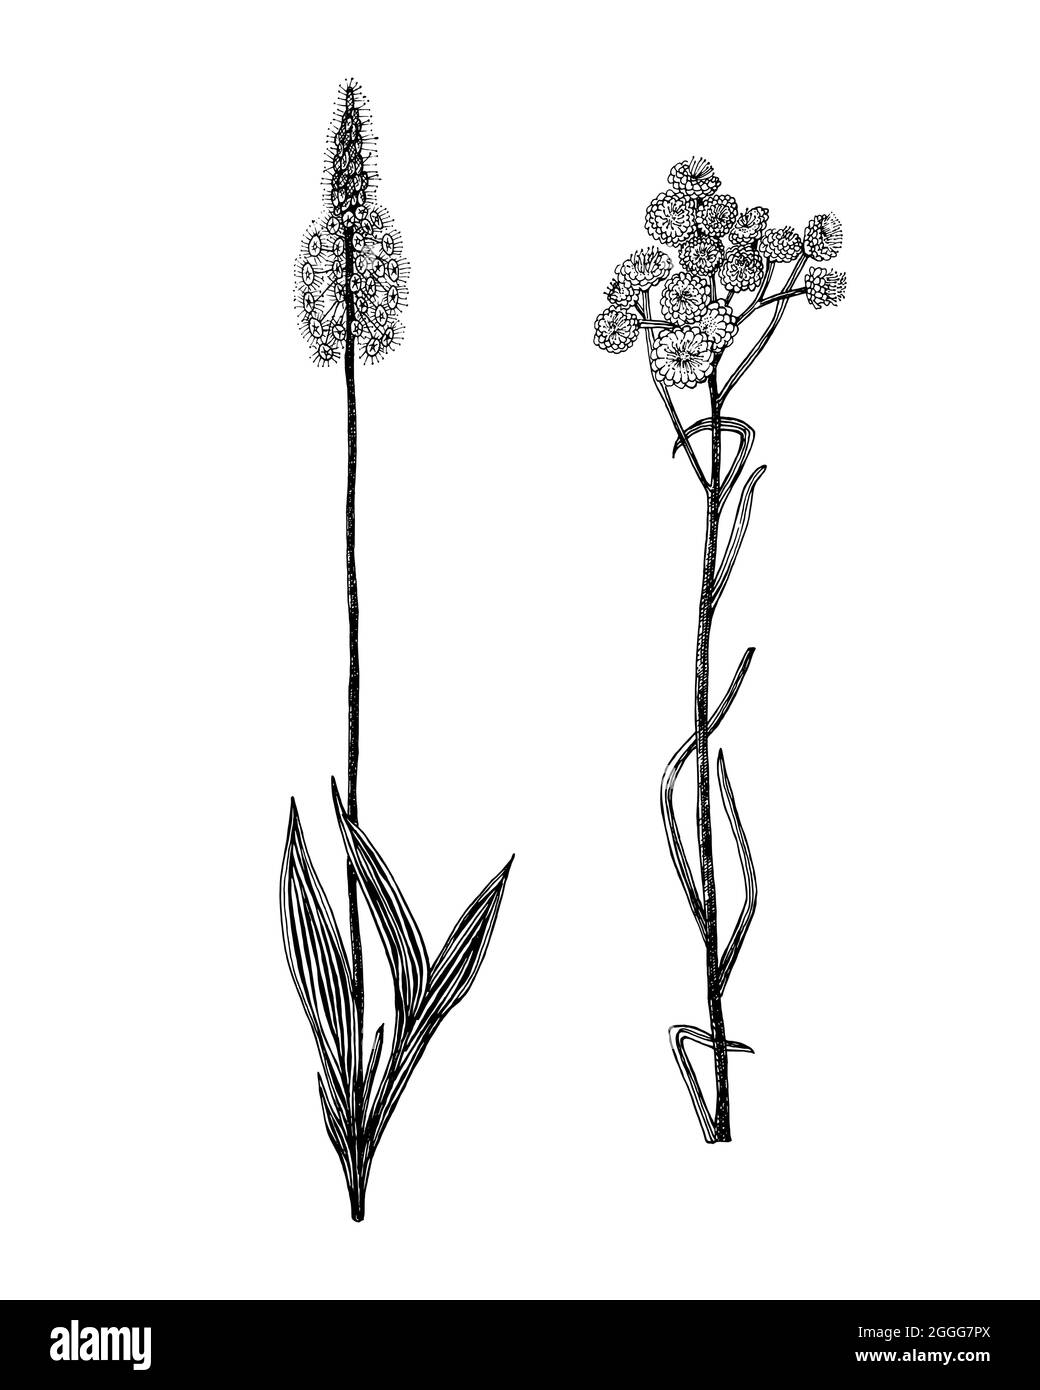 Plantago ou Helicrysum arenarium ou everlast nain ou immortelle. Illustration de plantes botaniques. Herbes vivaces herbacées millésimes. Motif floral dessiné à la main Illustration de Vecteur